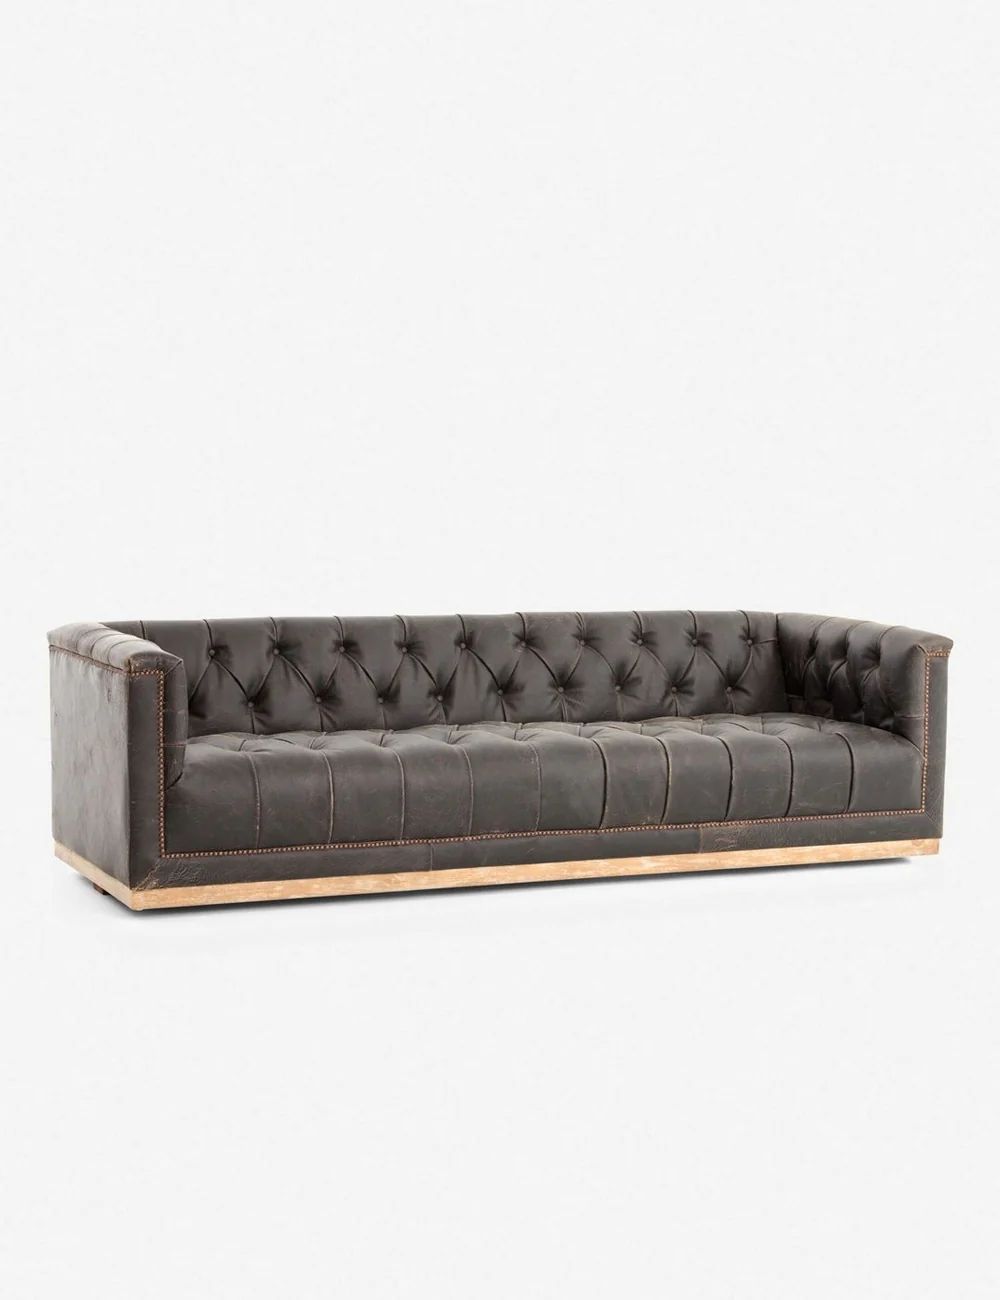 Afia Leather Sofa, Distressed Black | Lulu and Georgia 